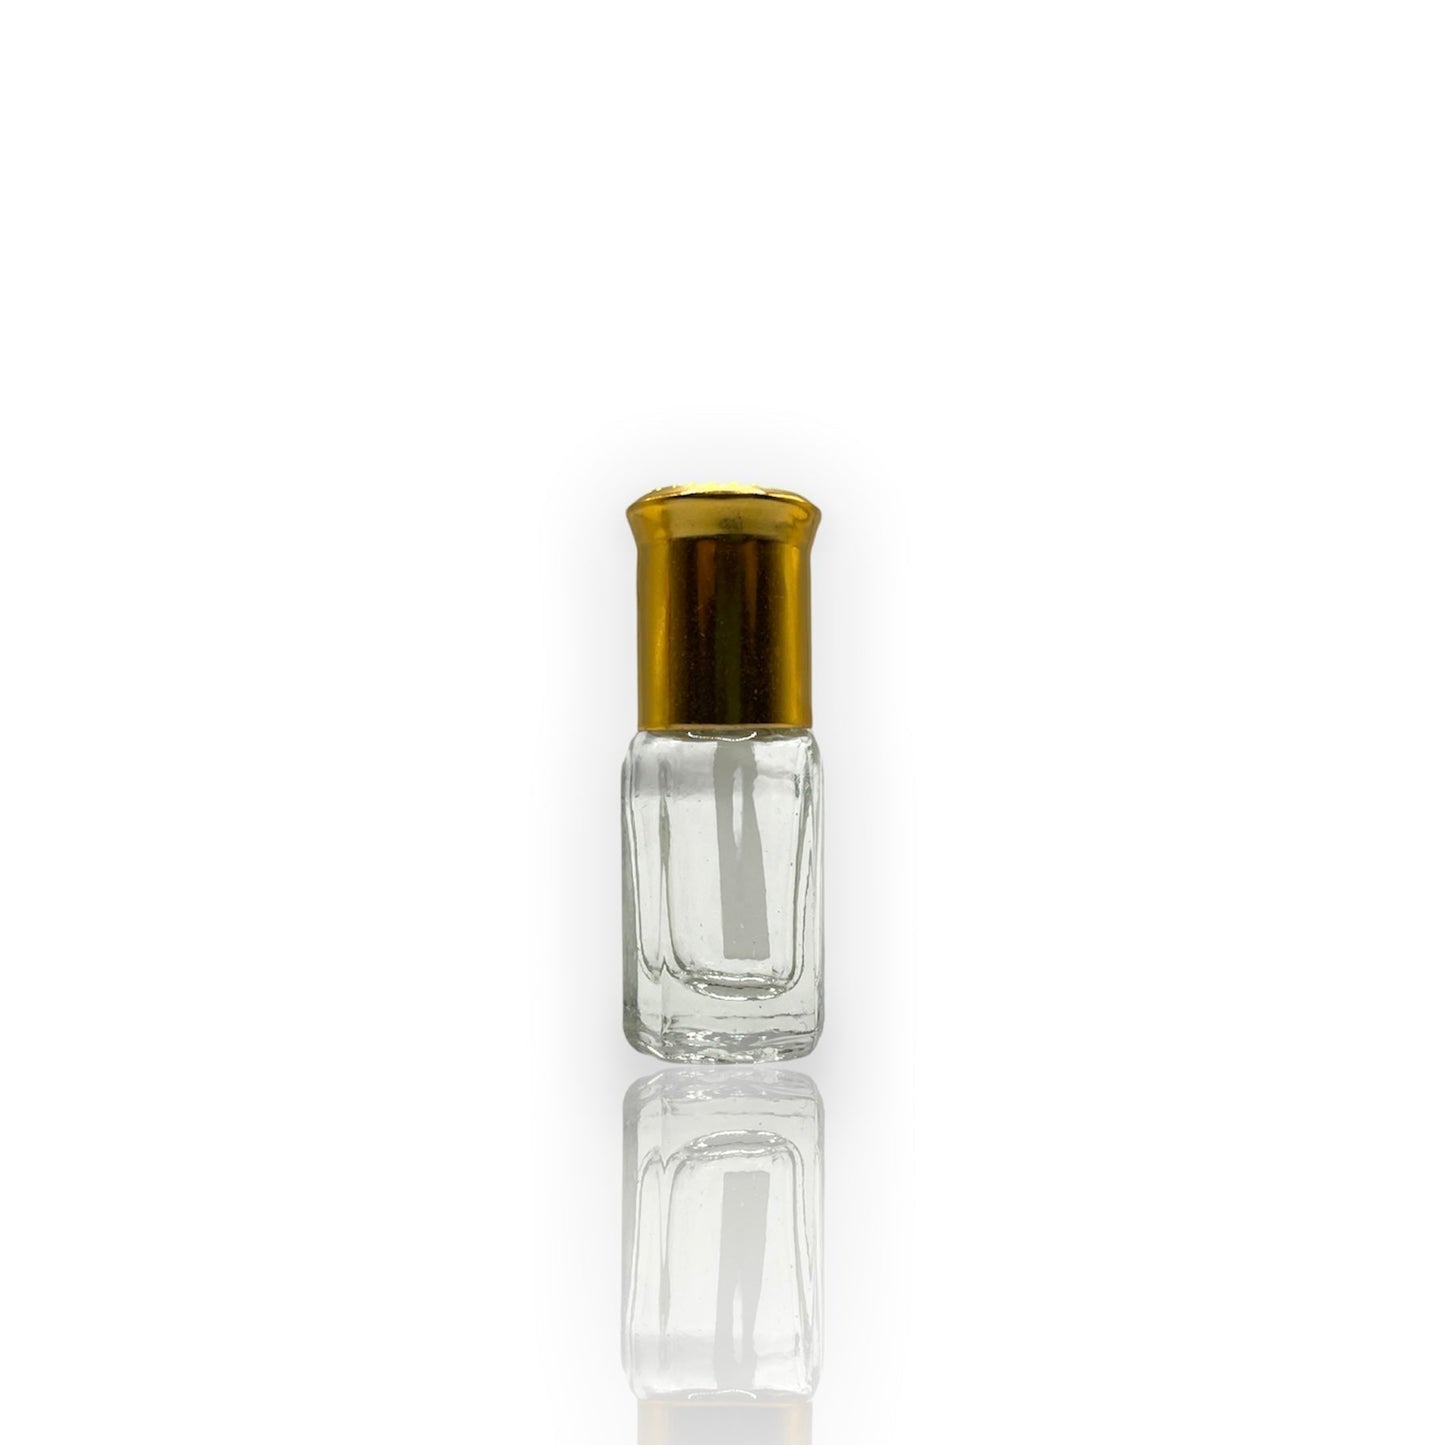 M-36 Öl Parfüm *Inspiriert Von Spicebomb Extreme